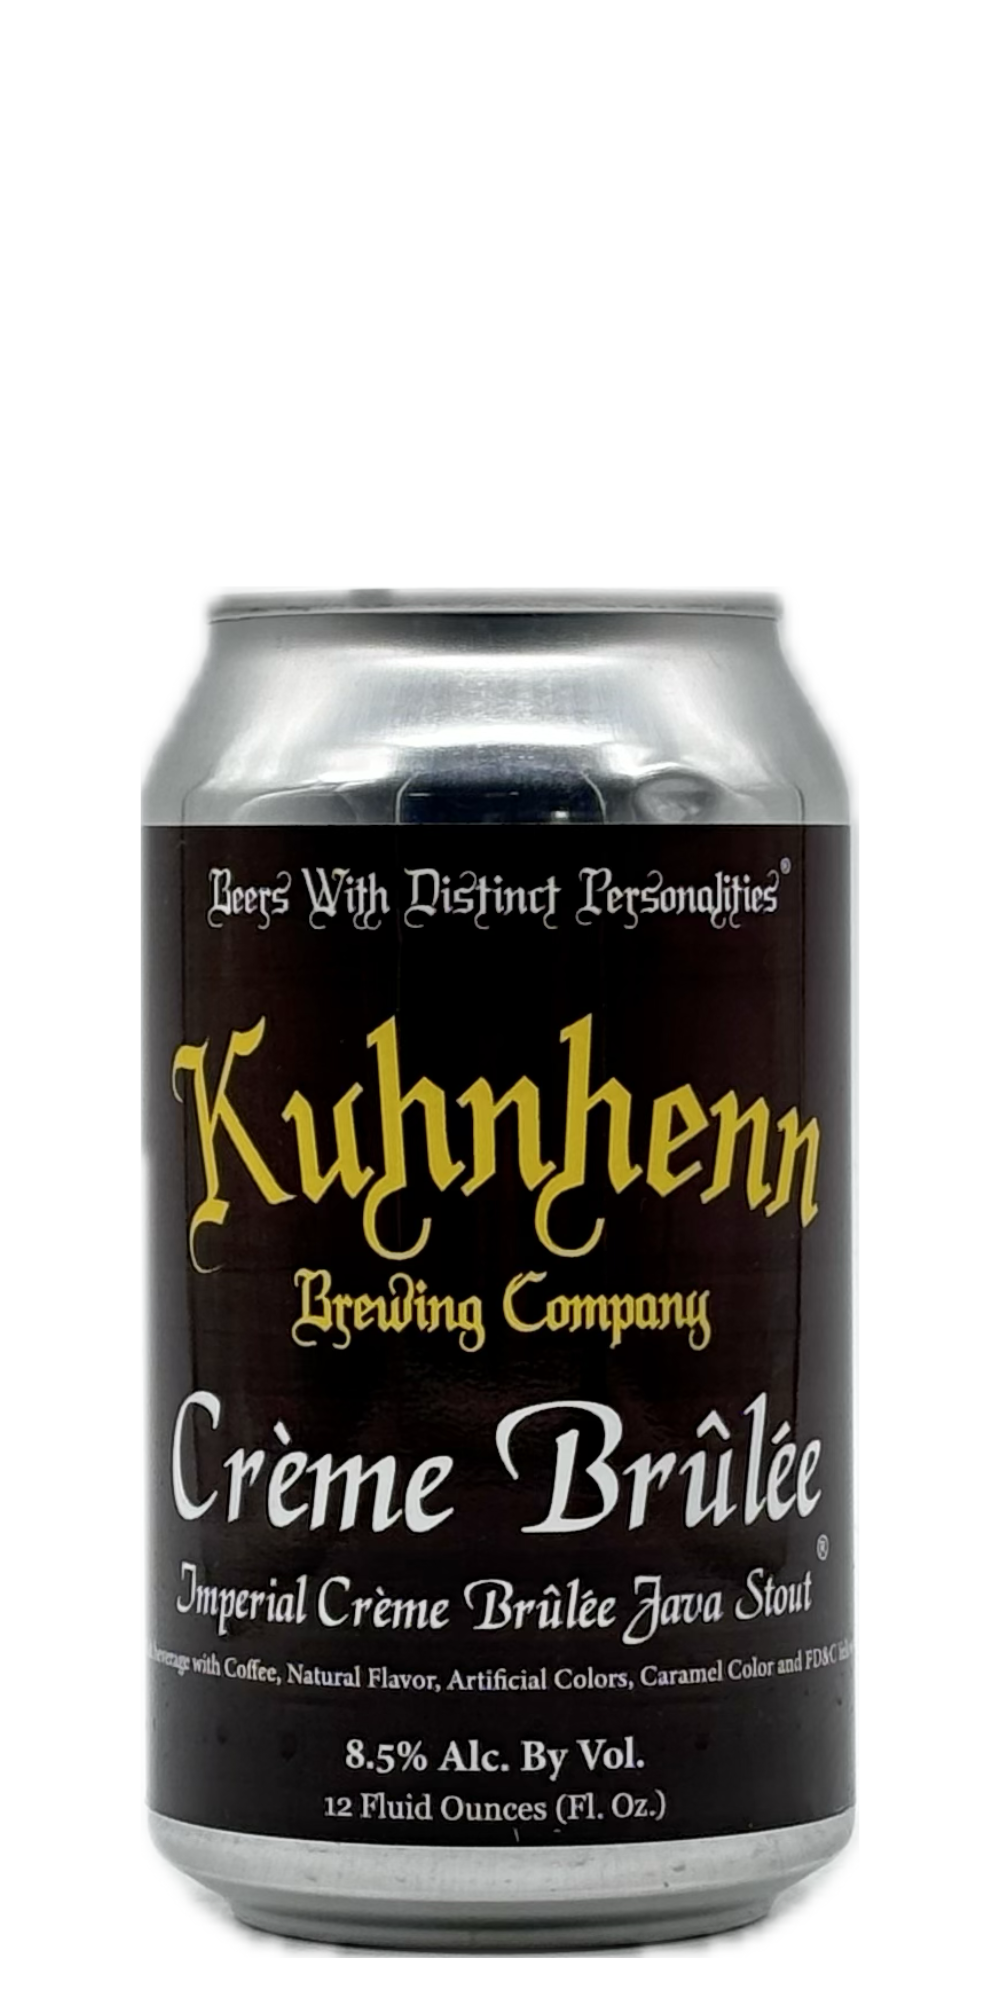 Kuhnhenn - Crème Brûlée